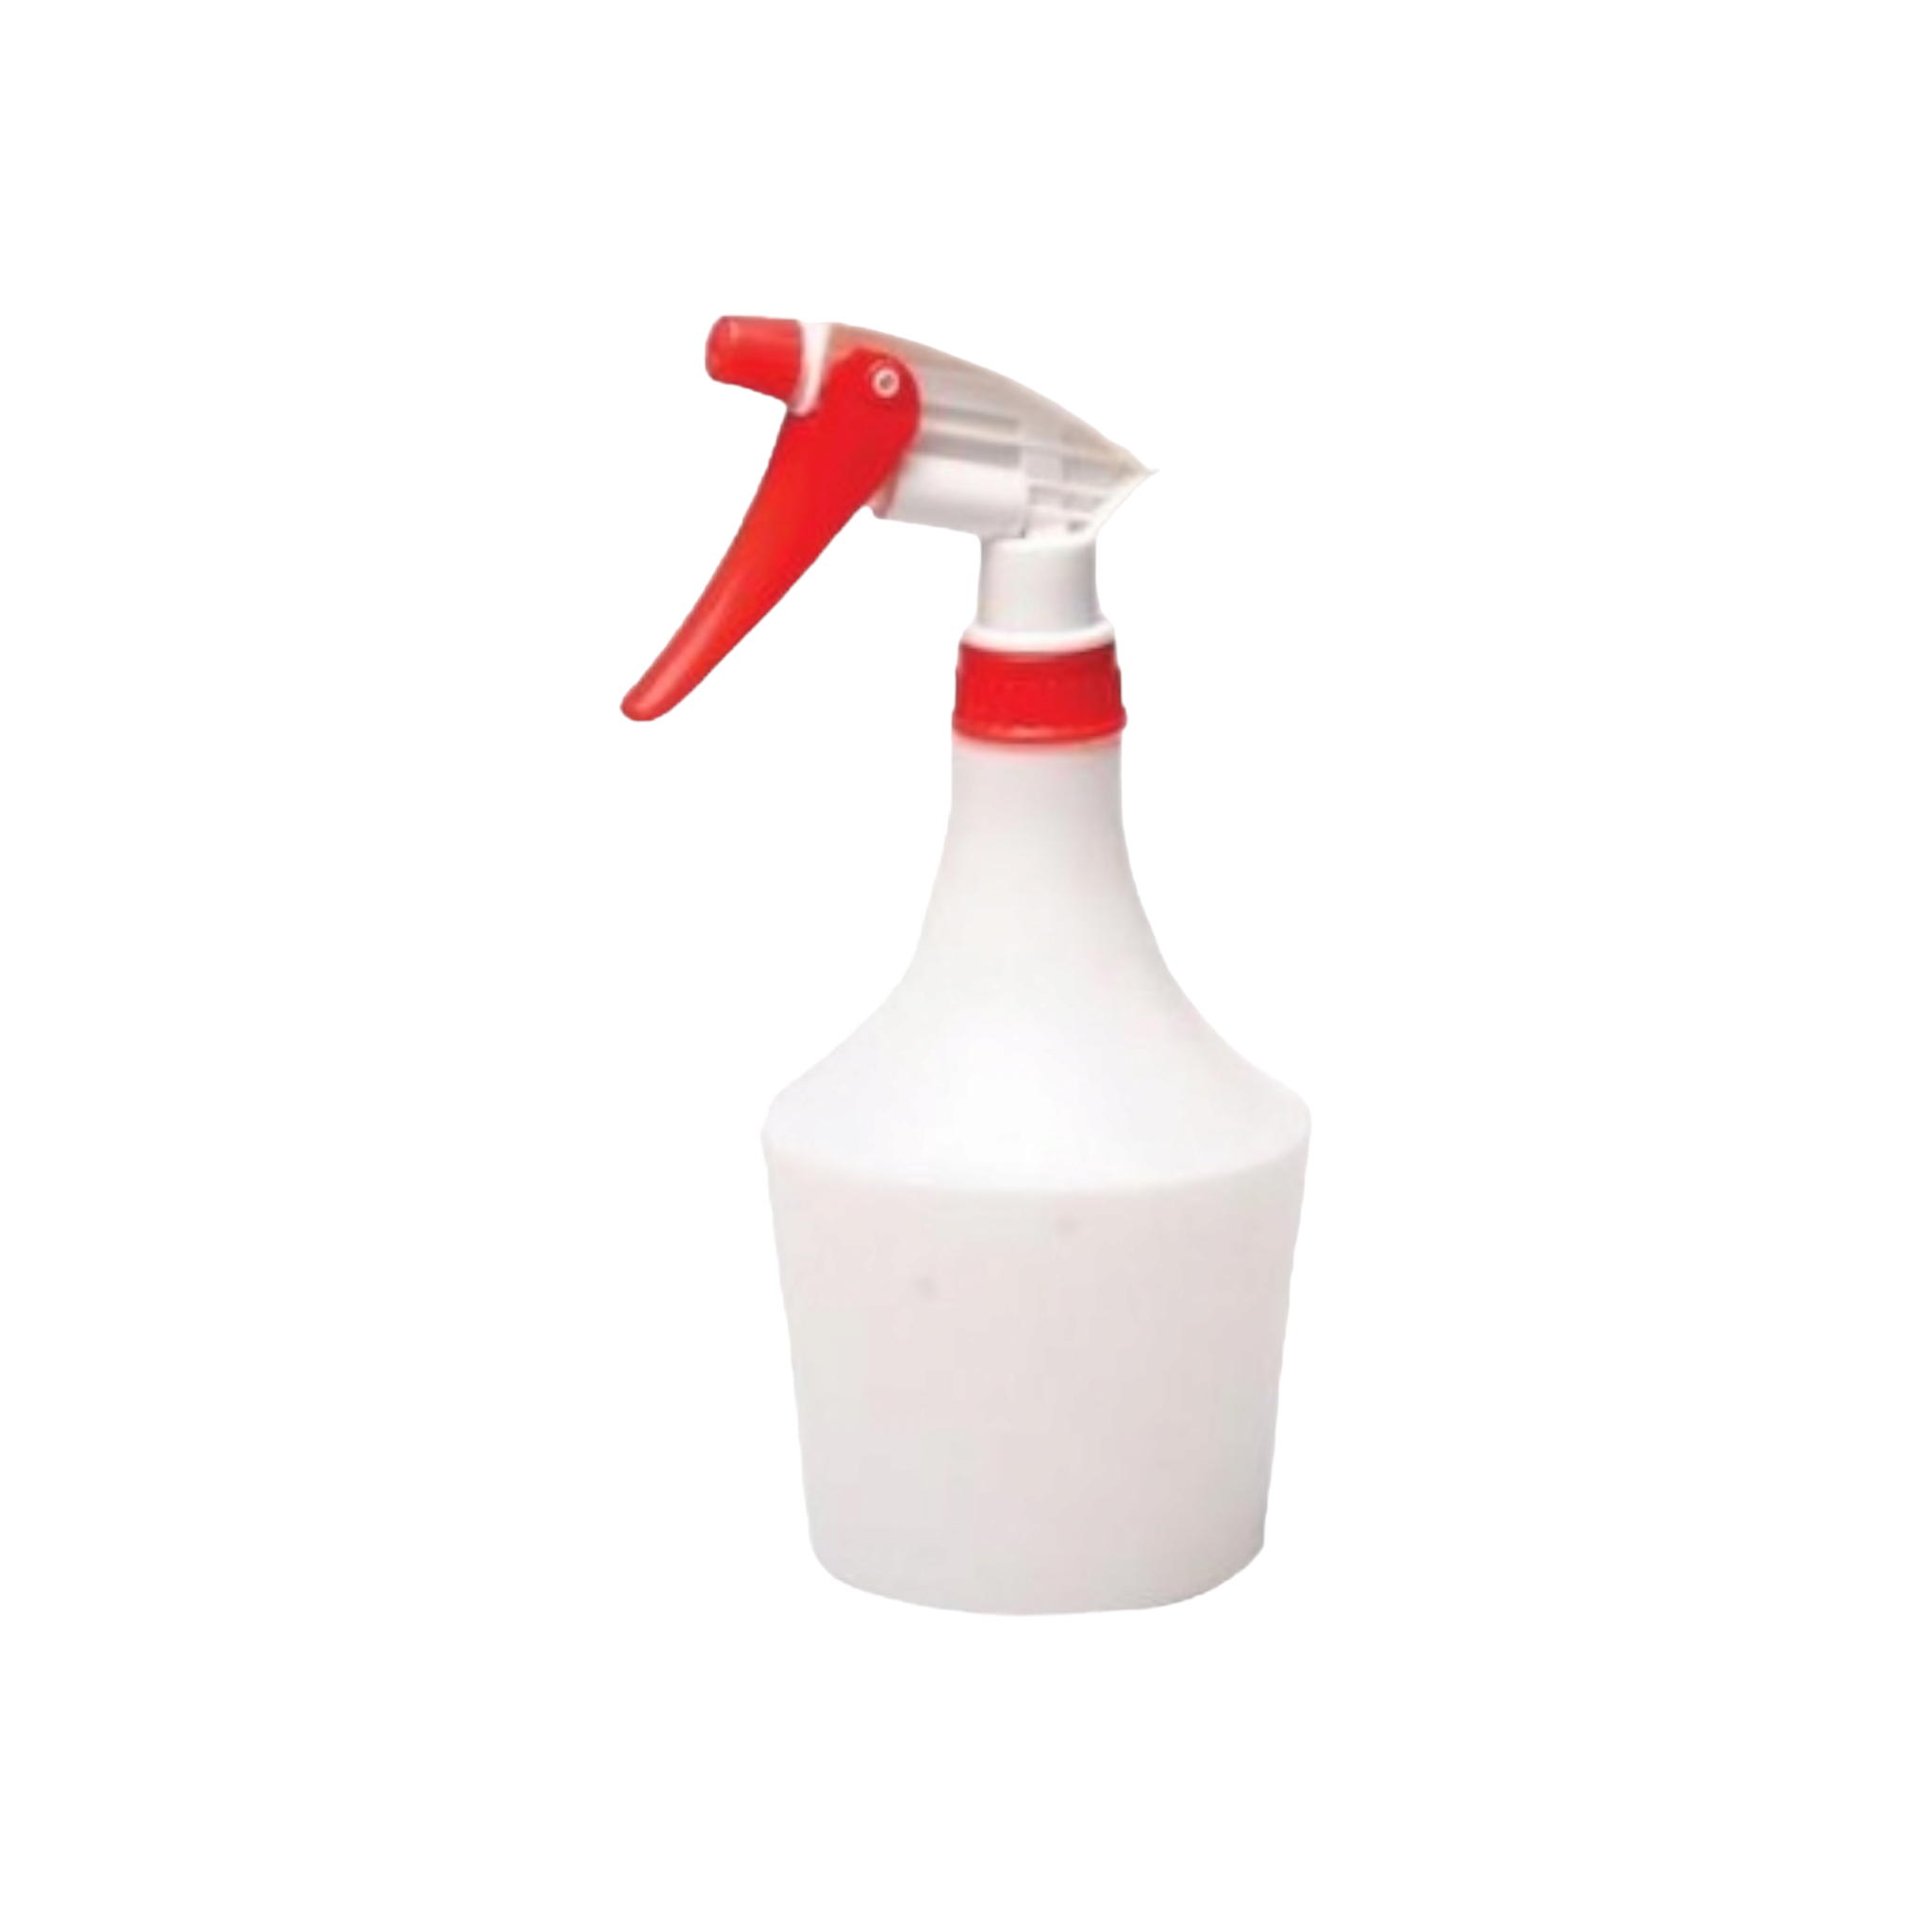 700ml Trigger Household Spray Bottle Plastic